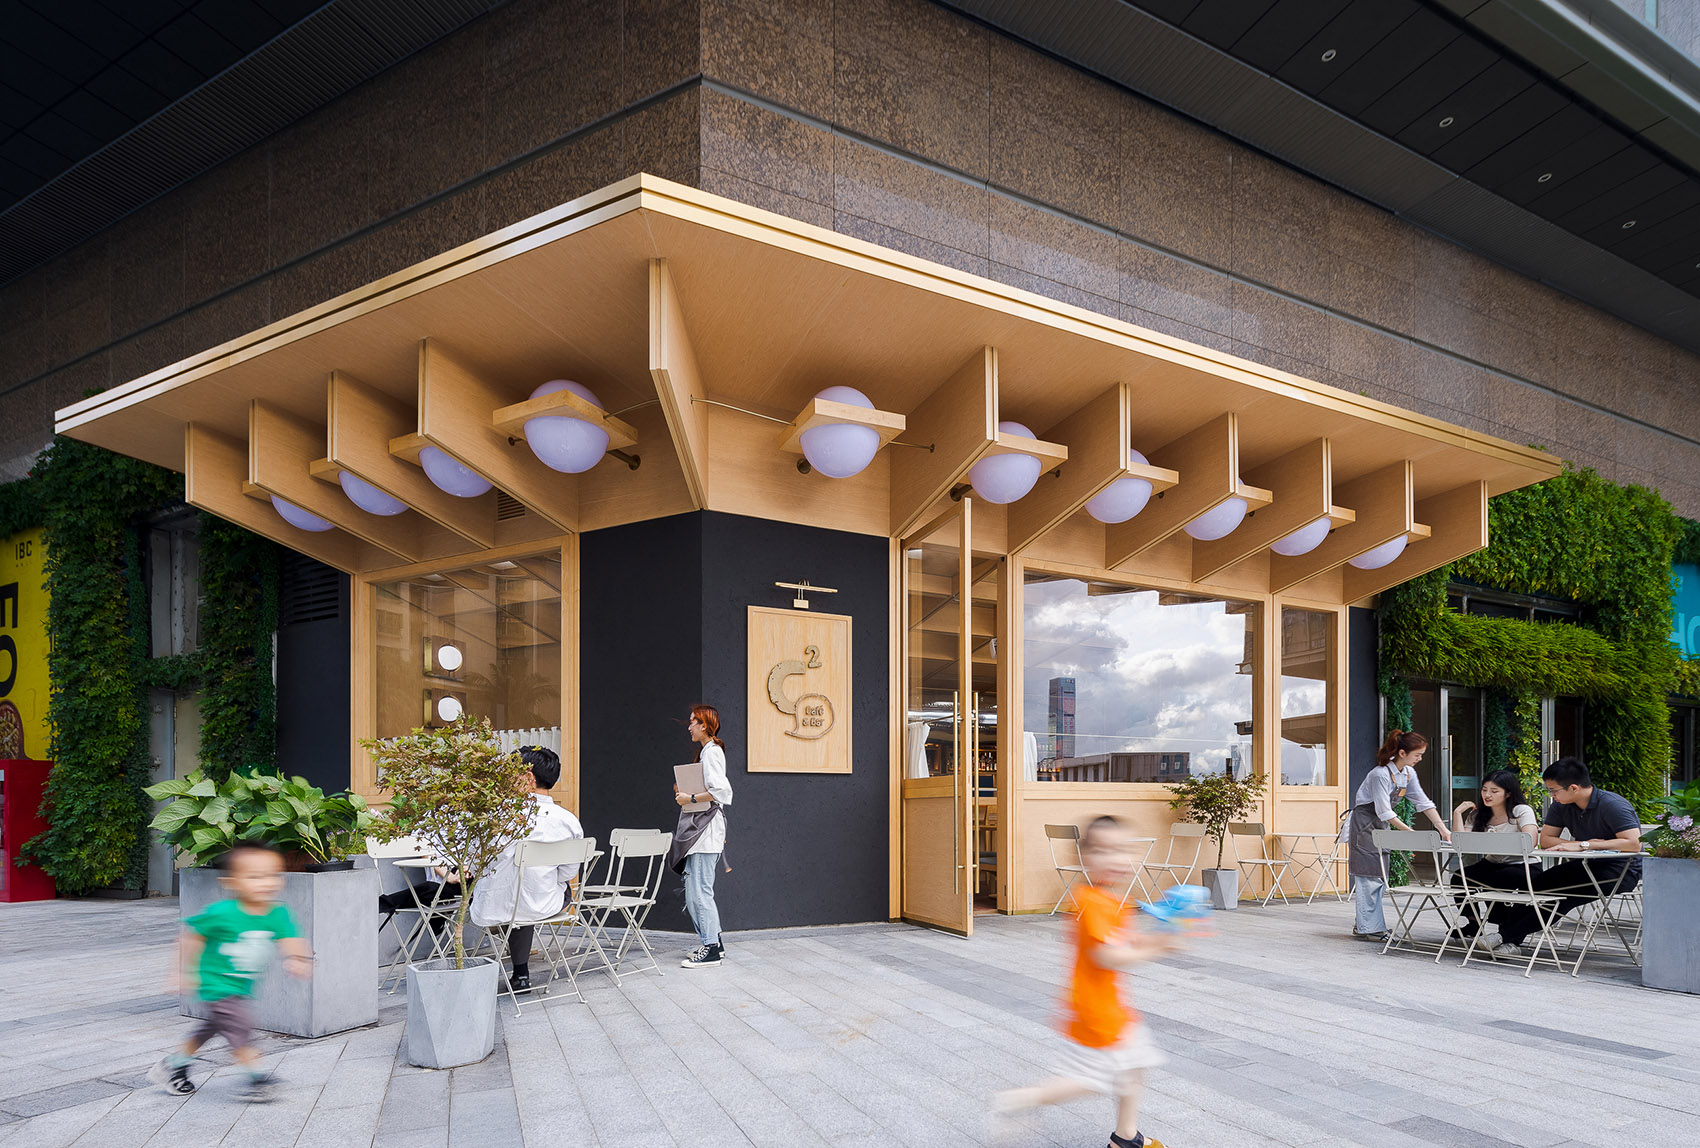 浮廊C2 Cafe &  Bar咖啡厅，深圳/专门为年轻人打造的“空中楼阁”-52